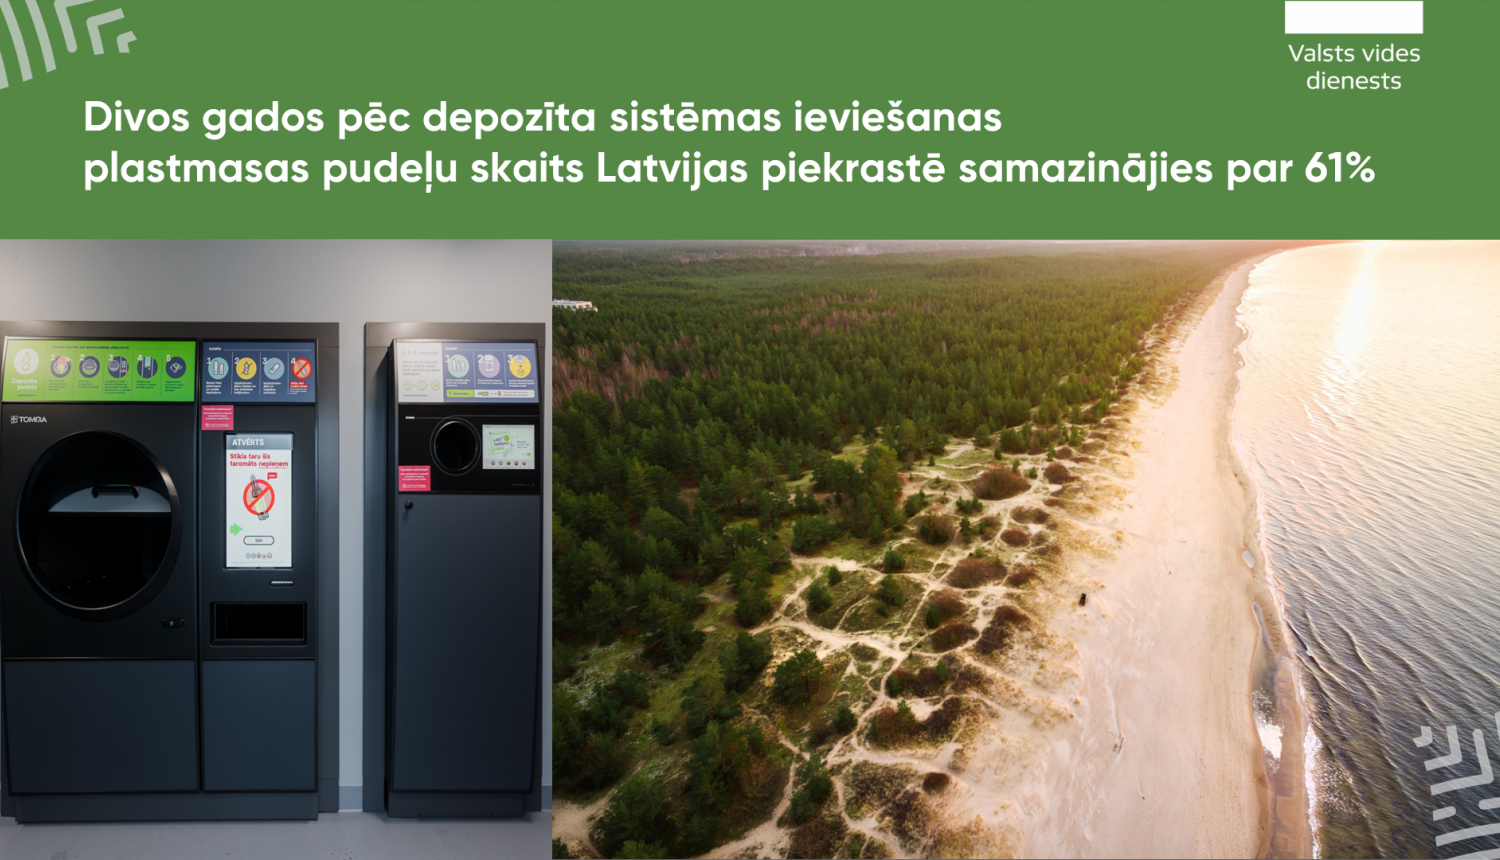 Divos gados pēc depozīta sistēmas ieviešanas plastmasas pudeļu skaits Latvijas piekrastē samazinājies par 61%